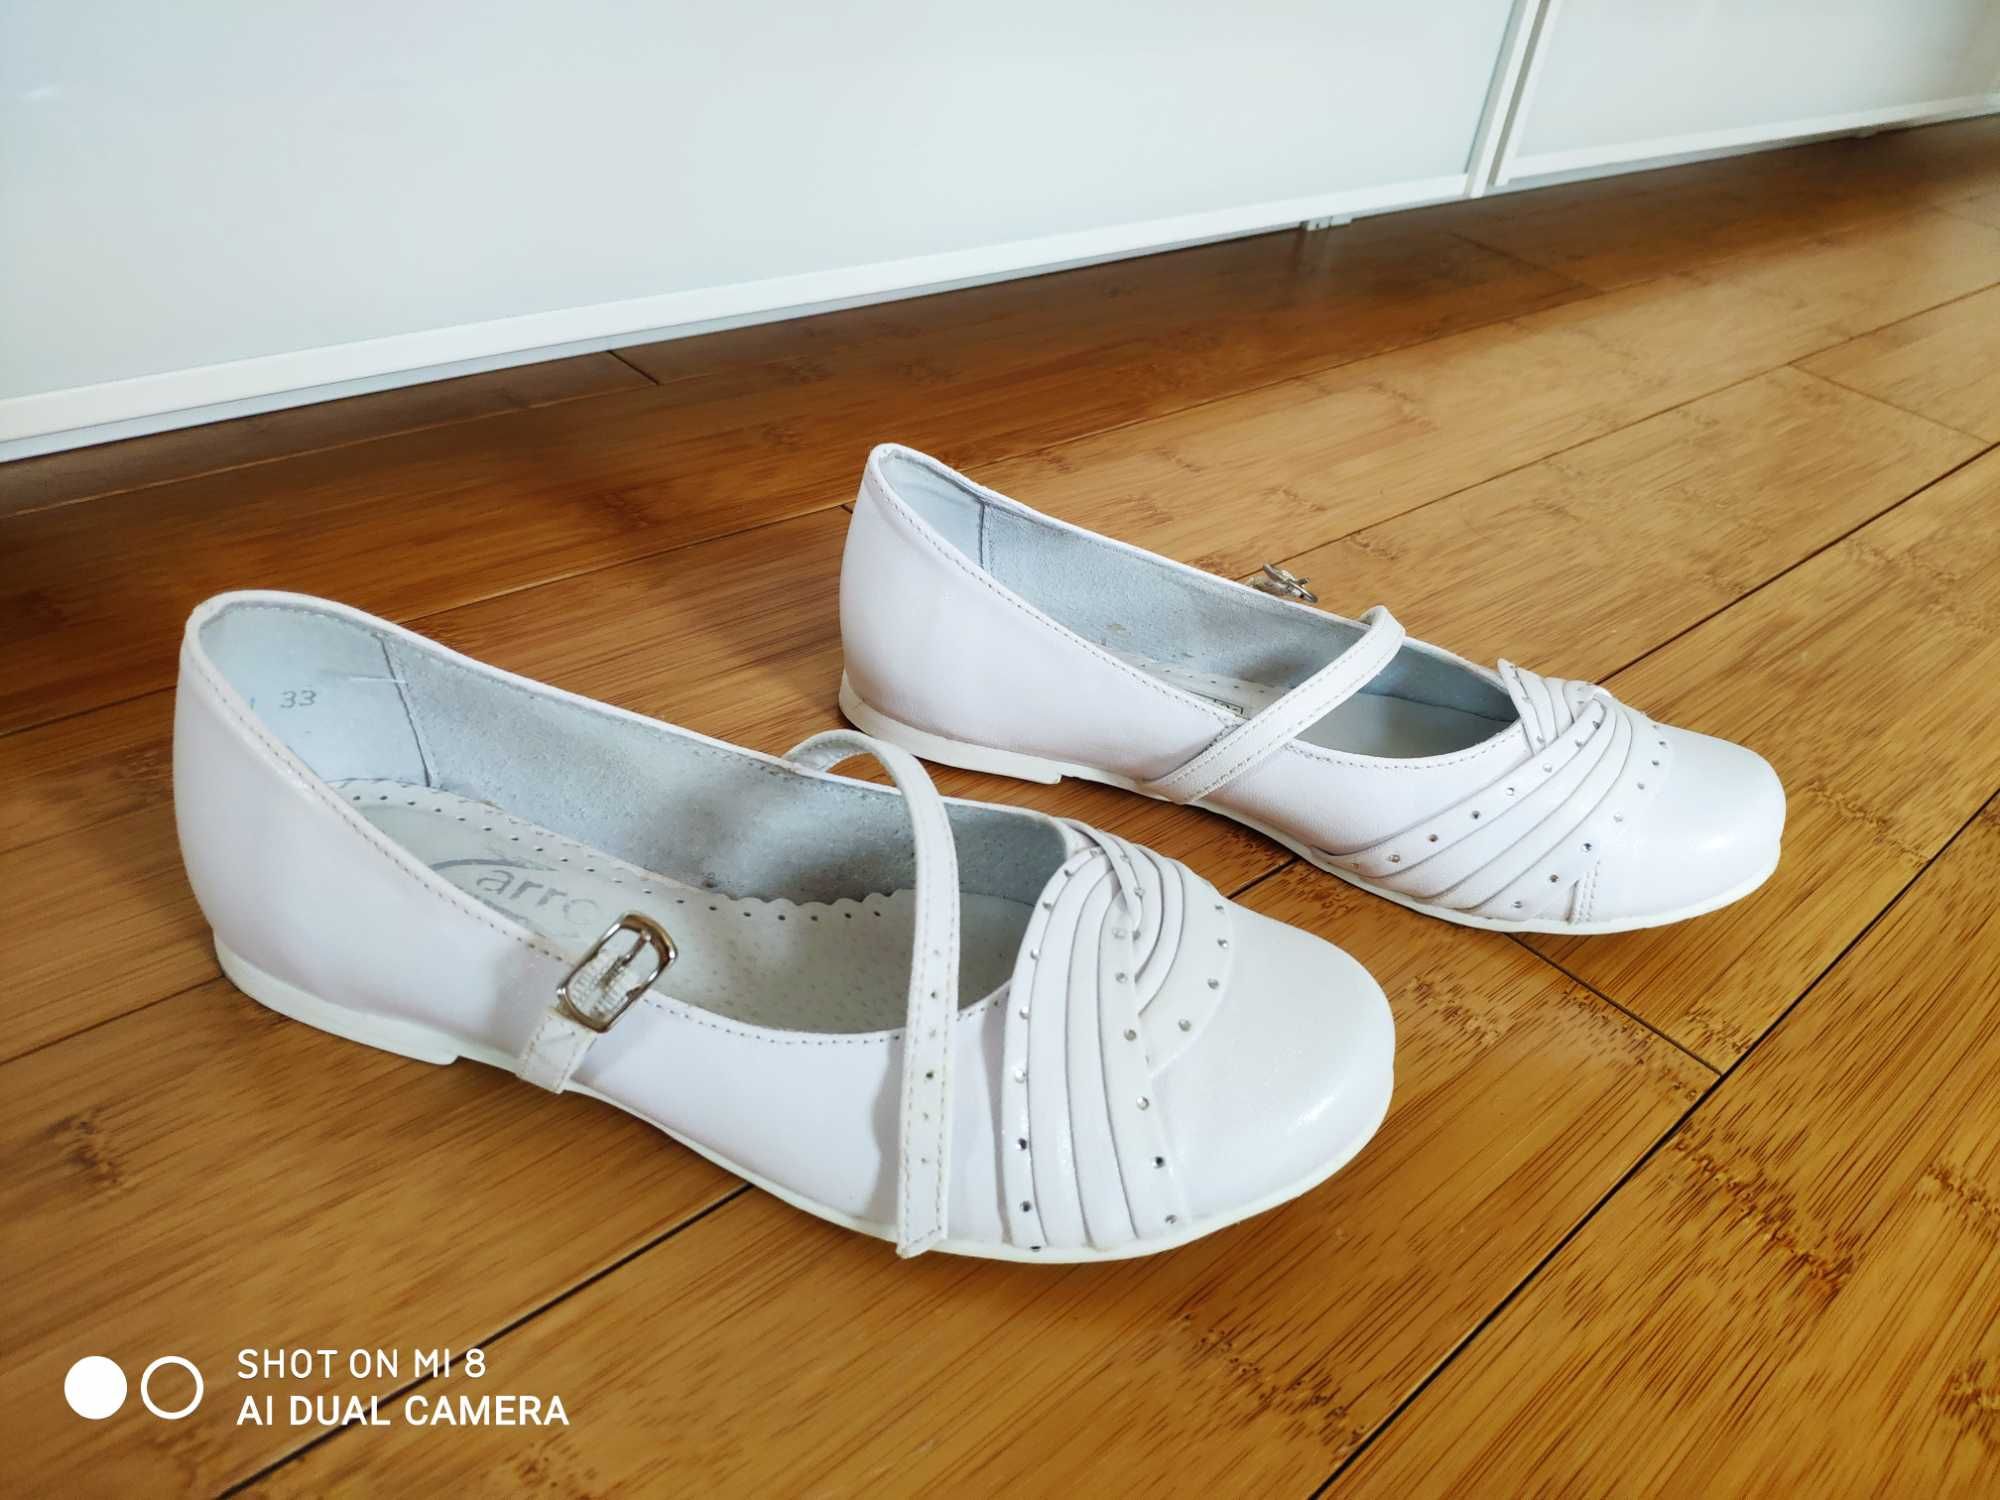 Nowe eleganckie białe buty Zarro rozmiar 33 - na komunię do komunii ko